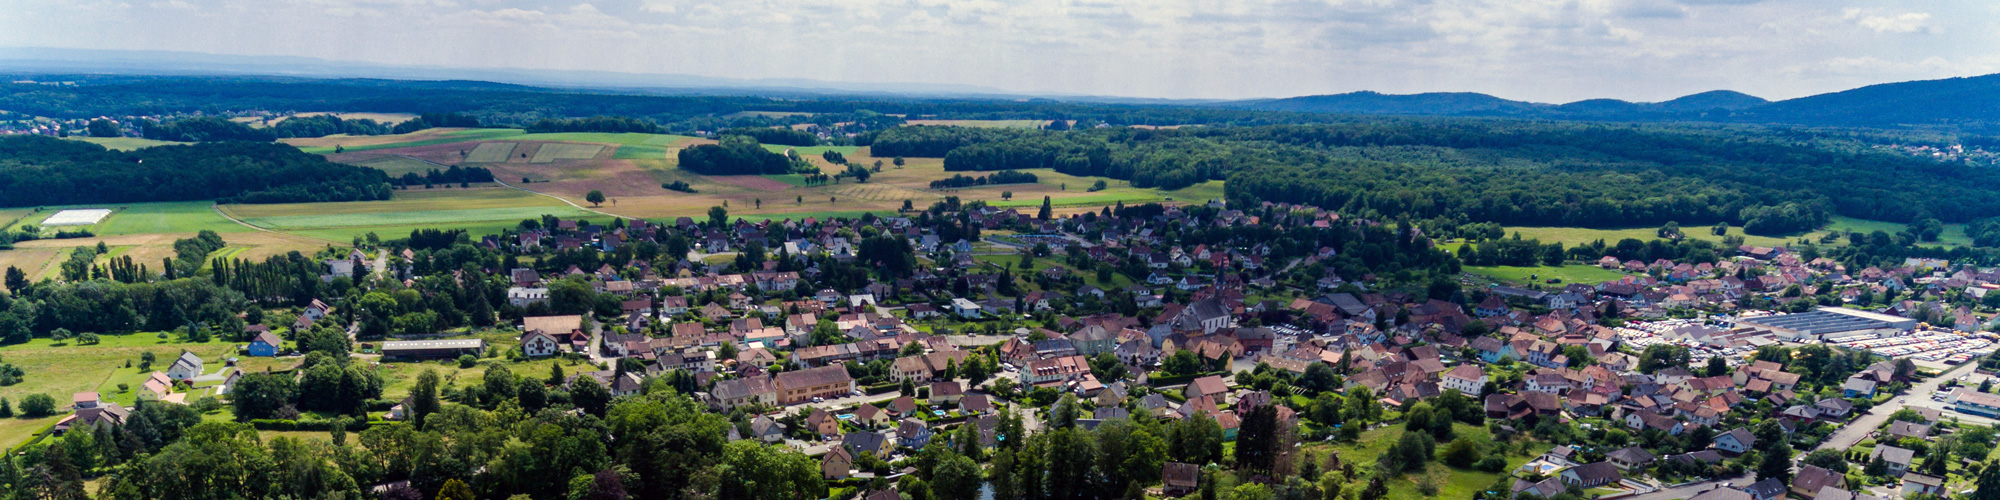 Bandeau de la ville de sentheim 68 Haut-Rhin Alsace